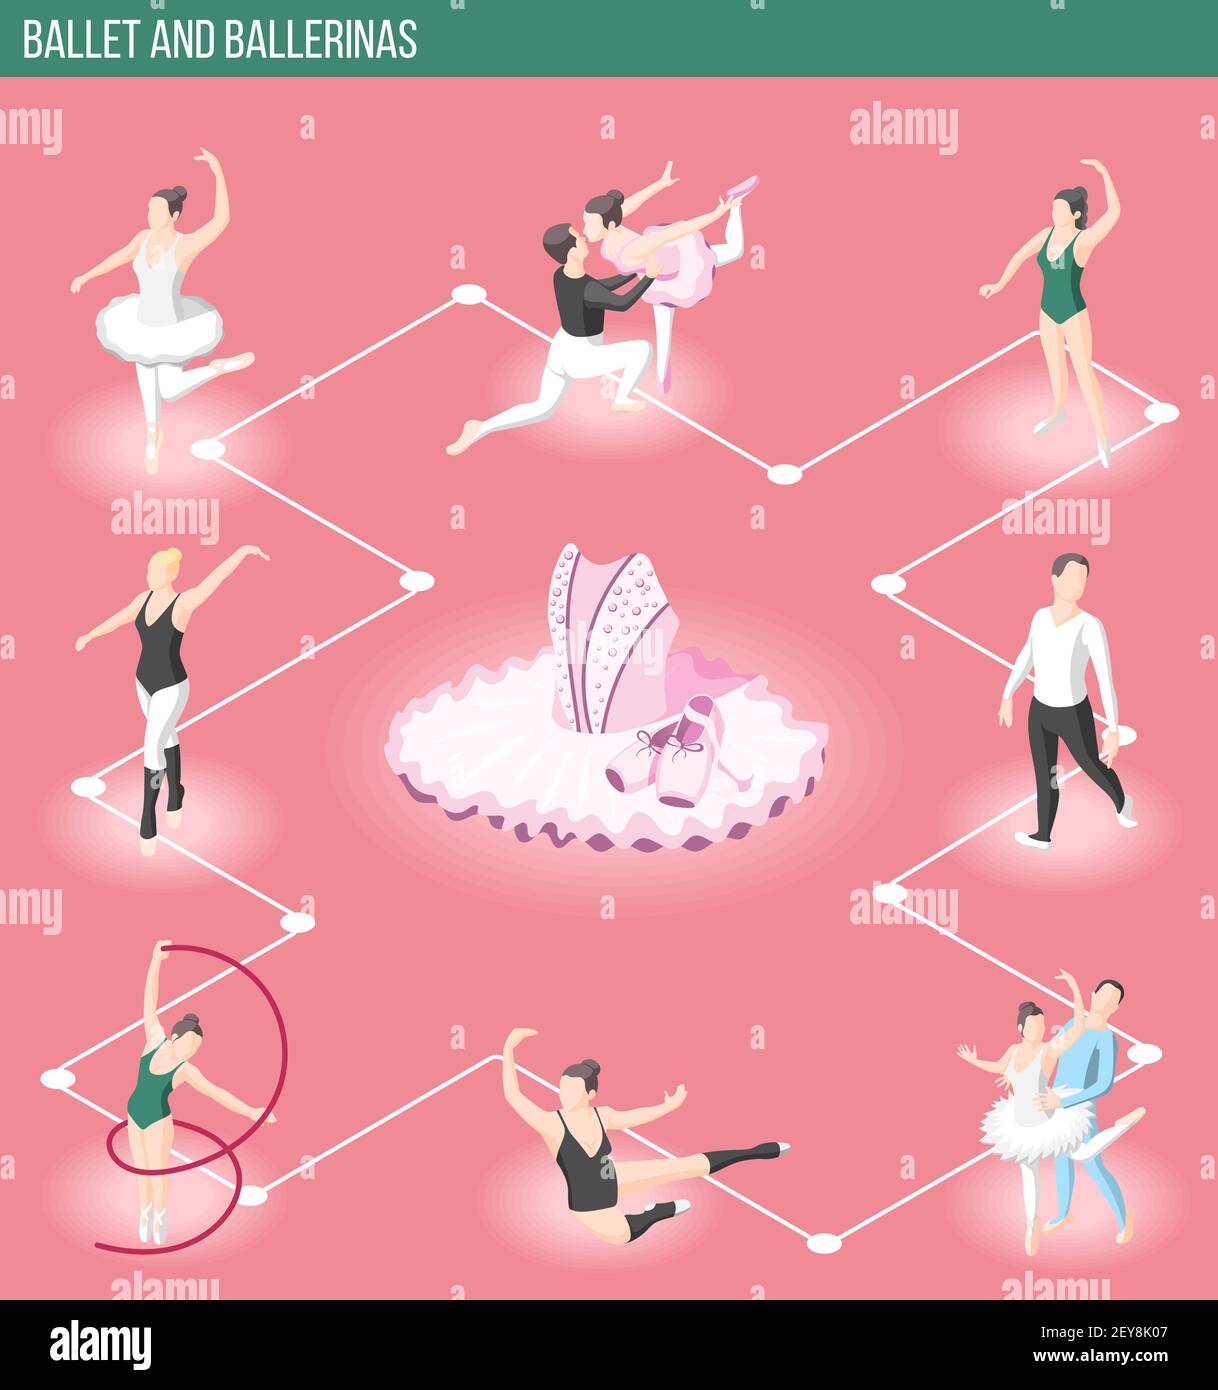 Balletto e ballerine diagramma di flusso isometrico con ballerini maschili e femminili personaggi e accessori di abbigliamento per l'illustrazione vettoriale delle prestazioni teatrali Illustrazione Vettoriale